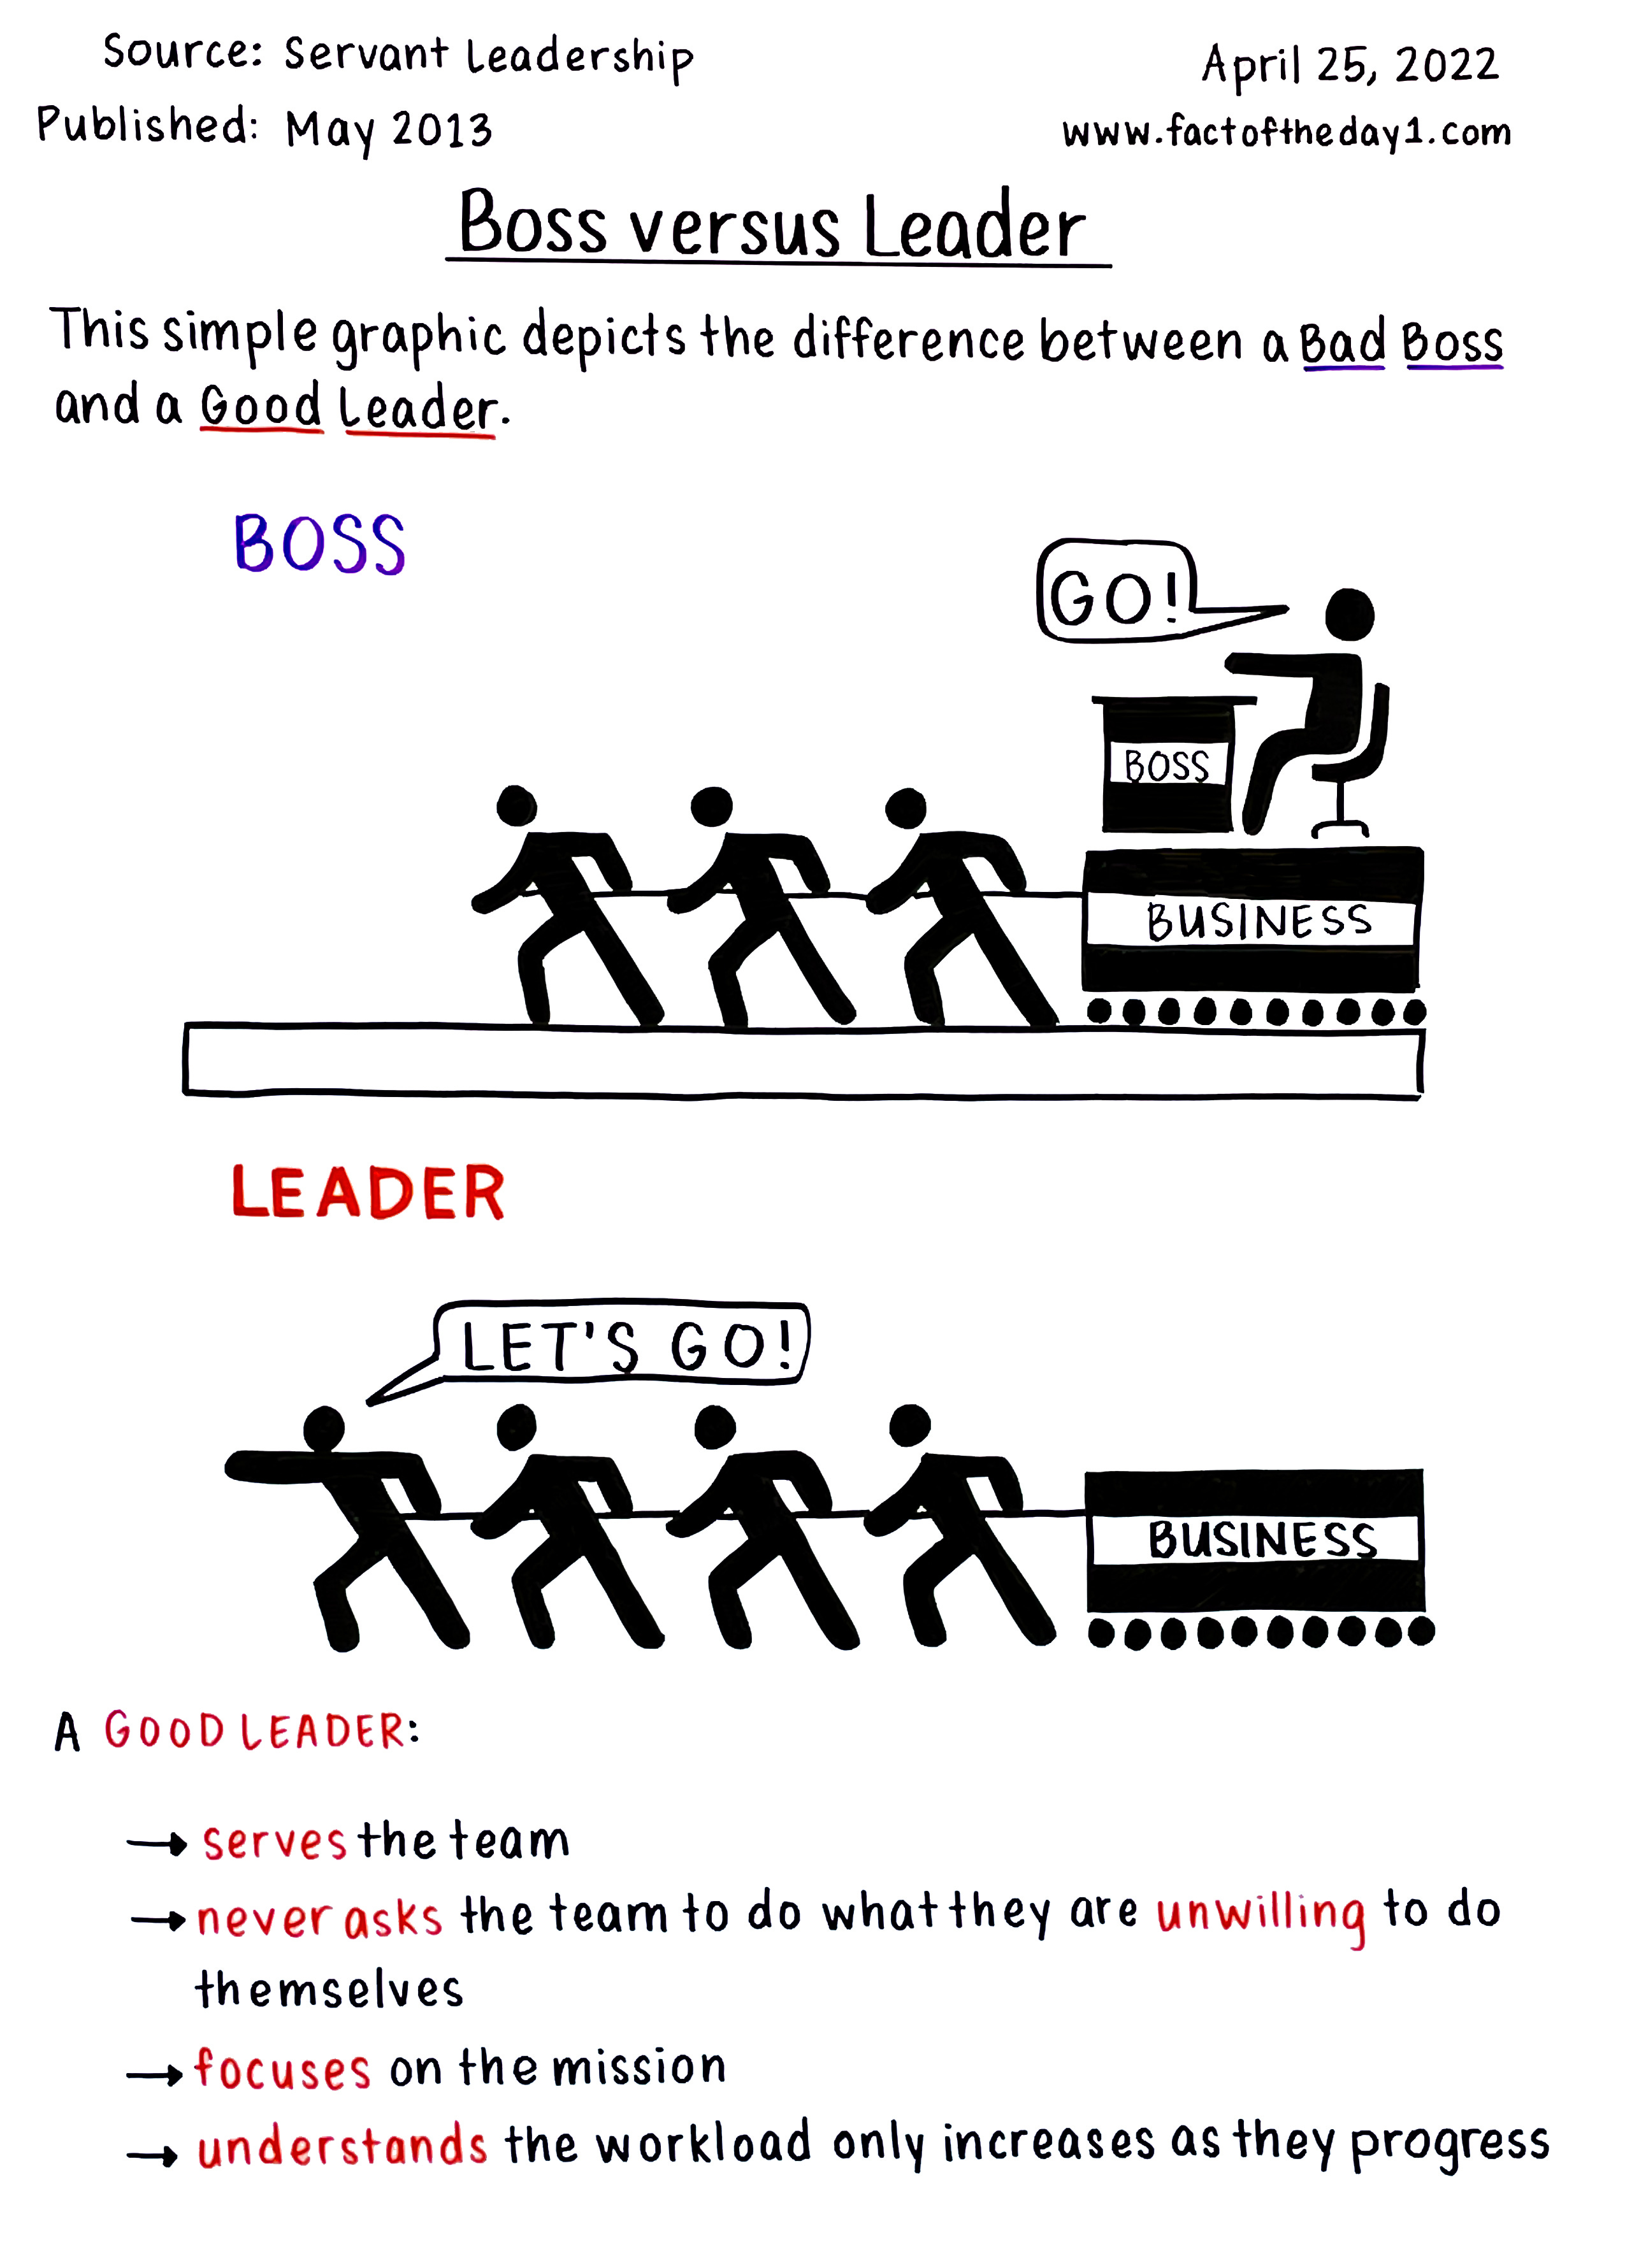 April 25: Boss versus Leader - by Danny Sheridan